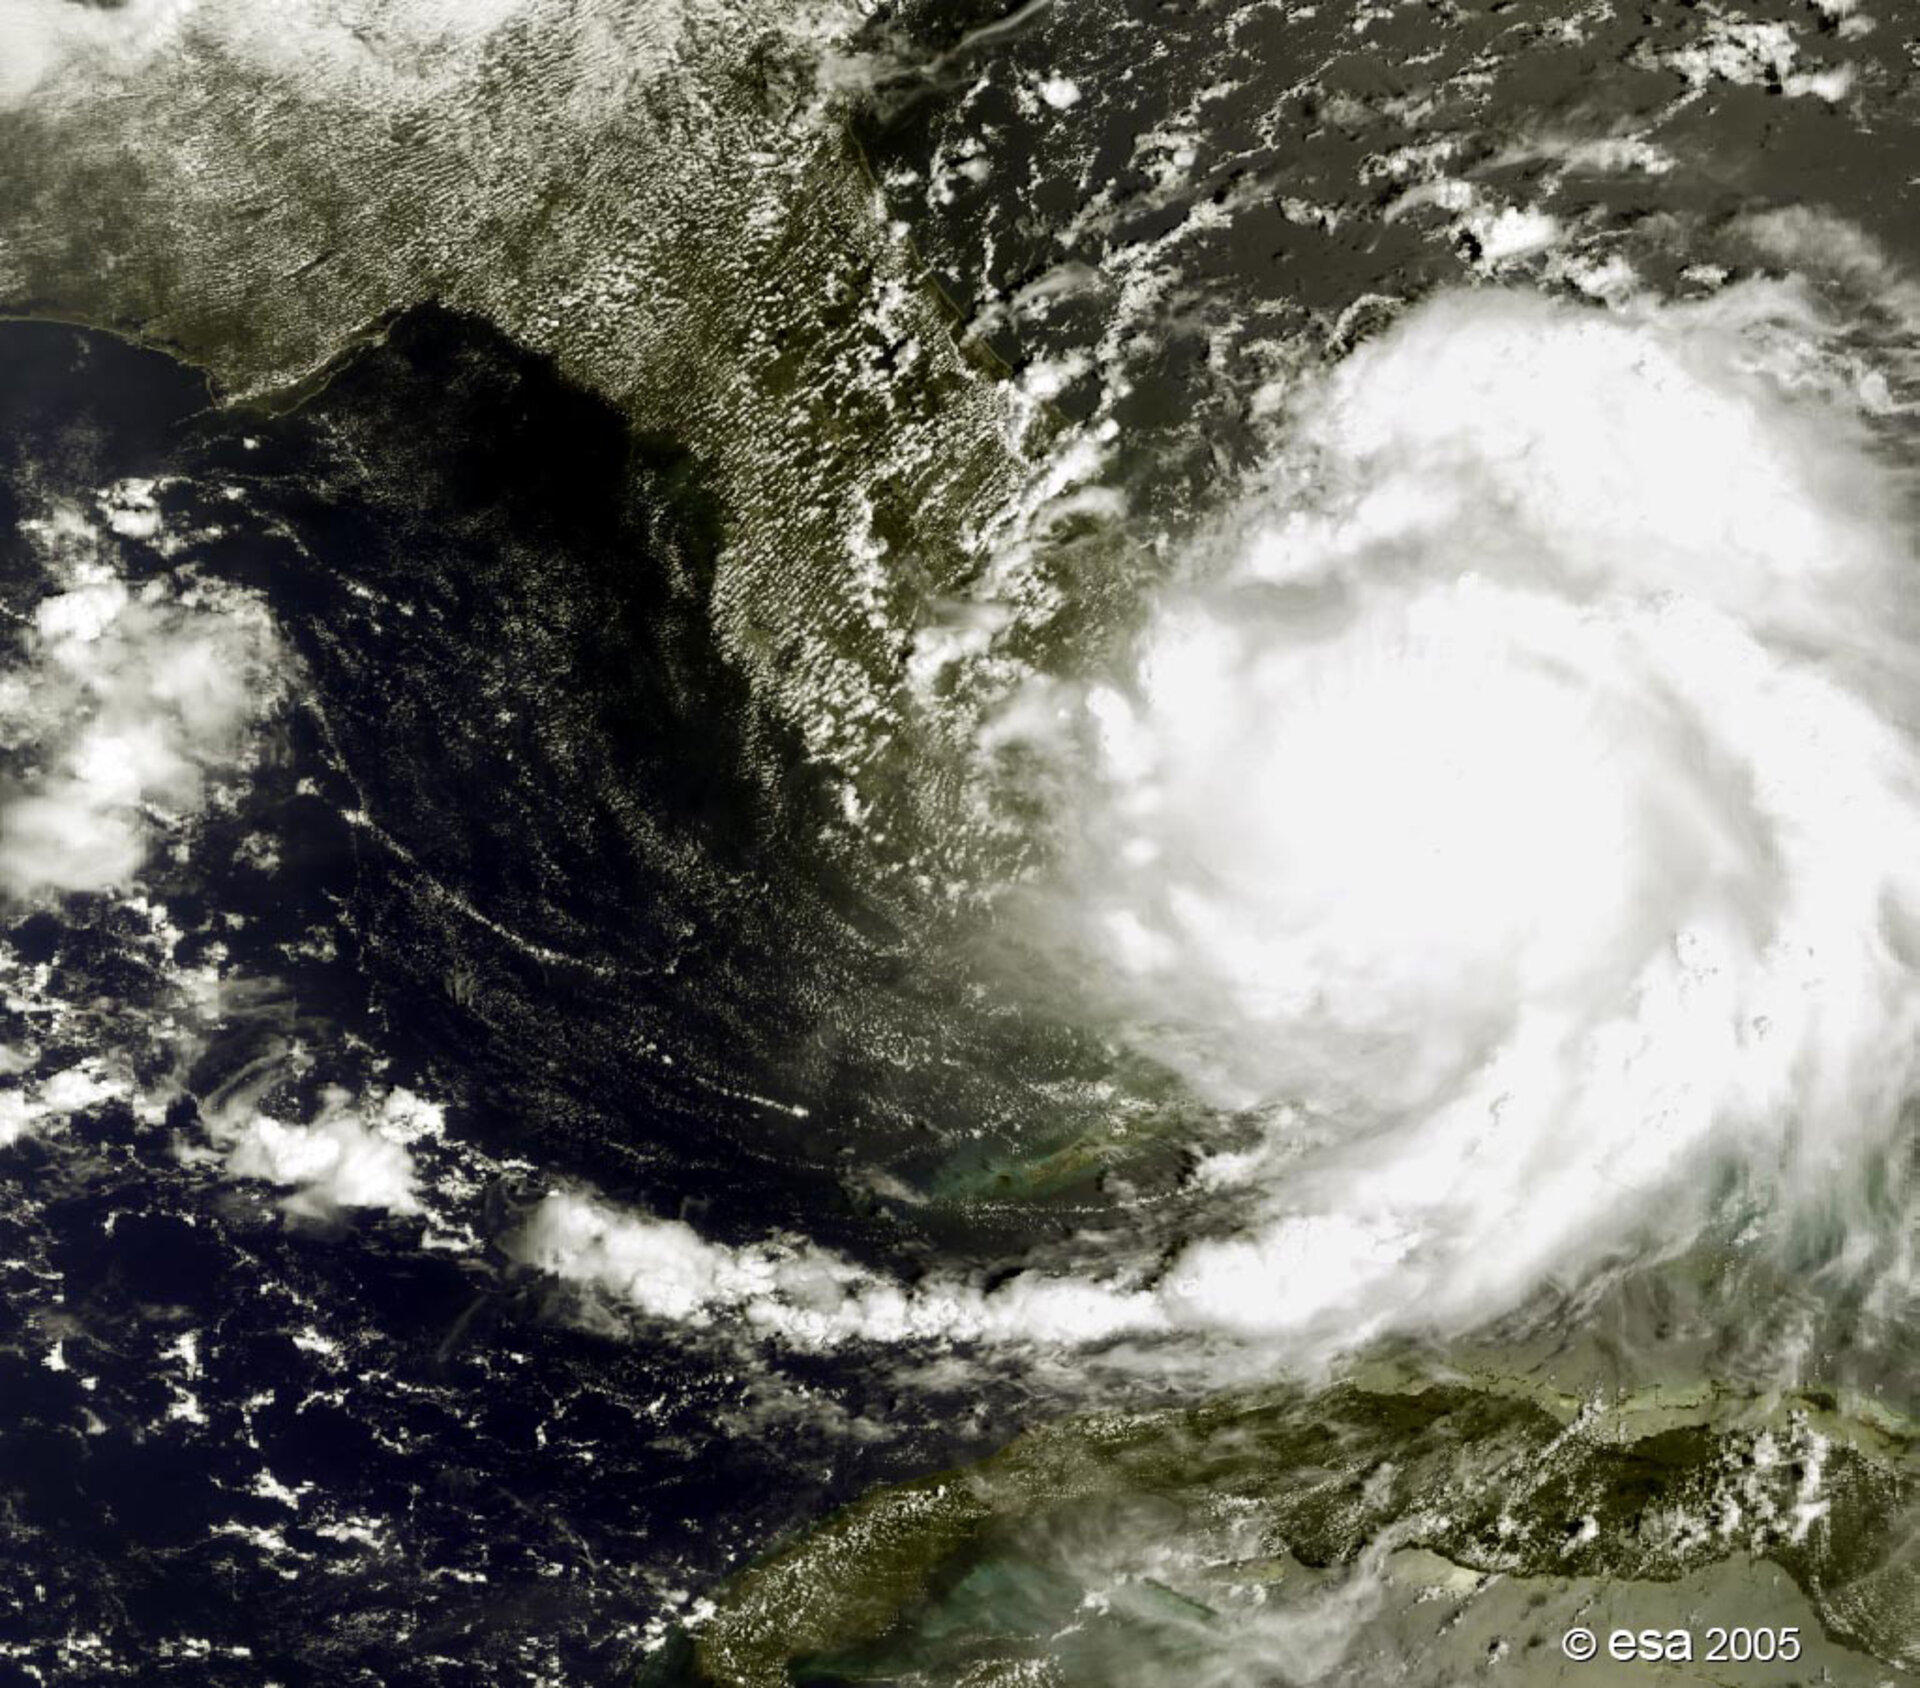 De verwoestende orkaan Katrina, gezien door de ESA-aardorbservatiesatelliet Envisat